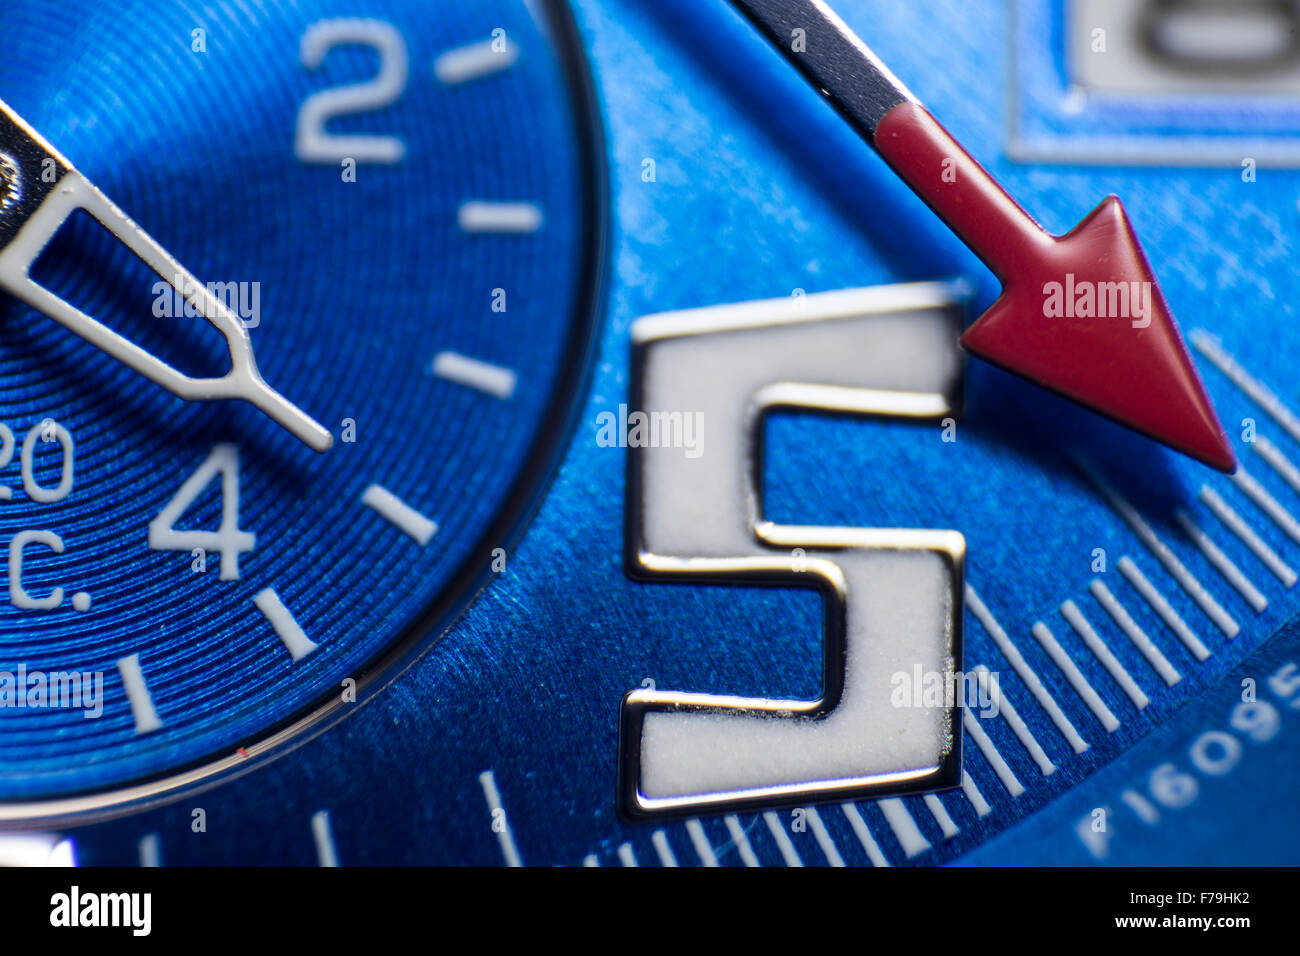 Dettaglio sulla parte superiore di un orologio da polso blu Foto Stock